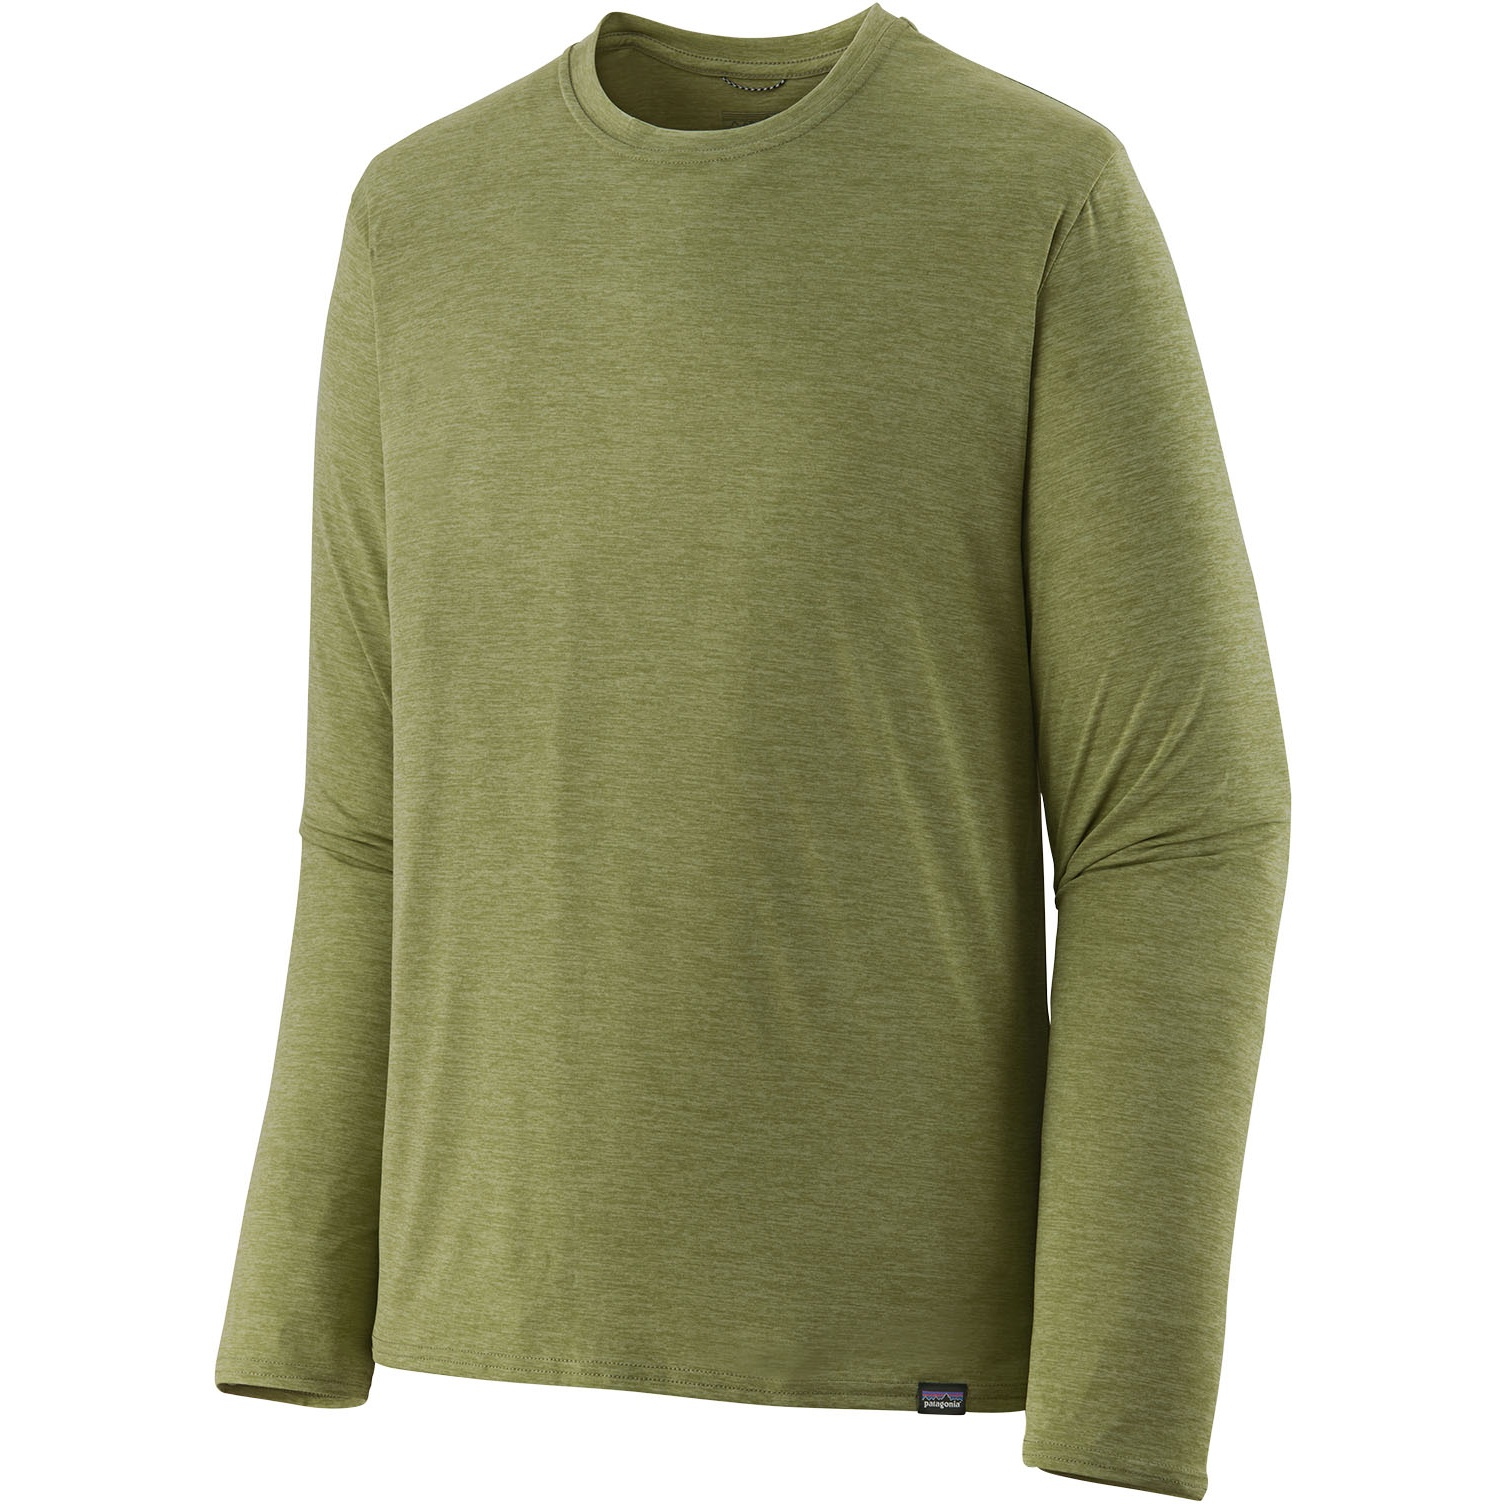 Picture of Patagonia Capilene Cool Daily Longsleeve Shirt Men - Buckhorn Green - Light Buckhorn Green X-Dye